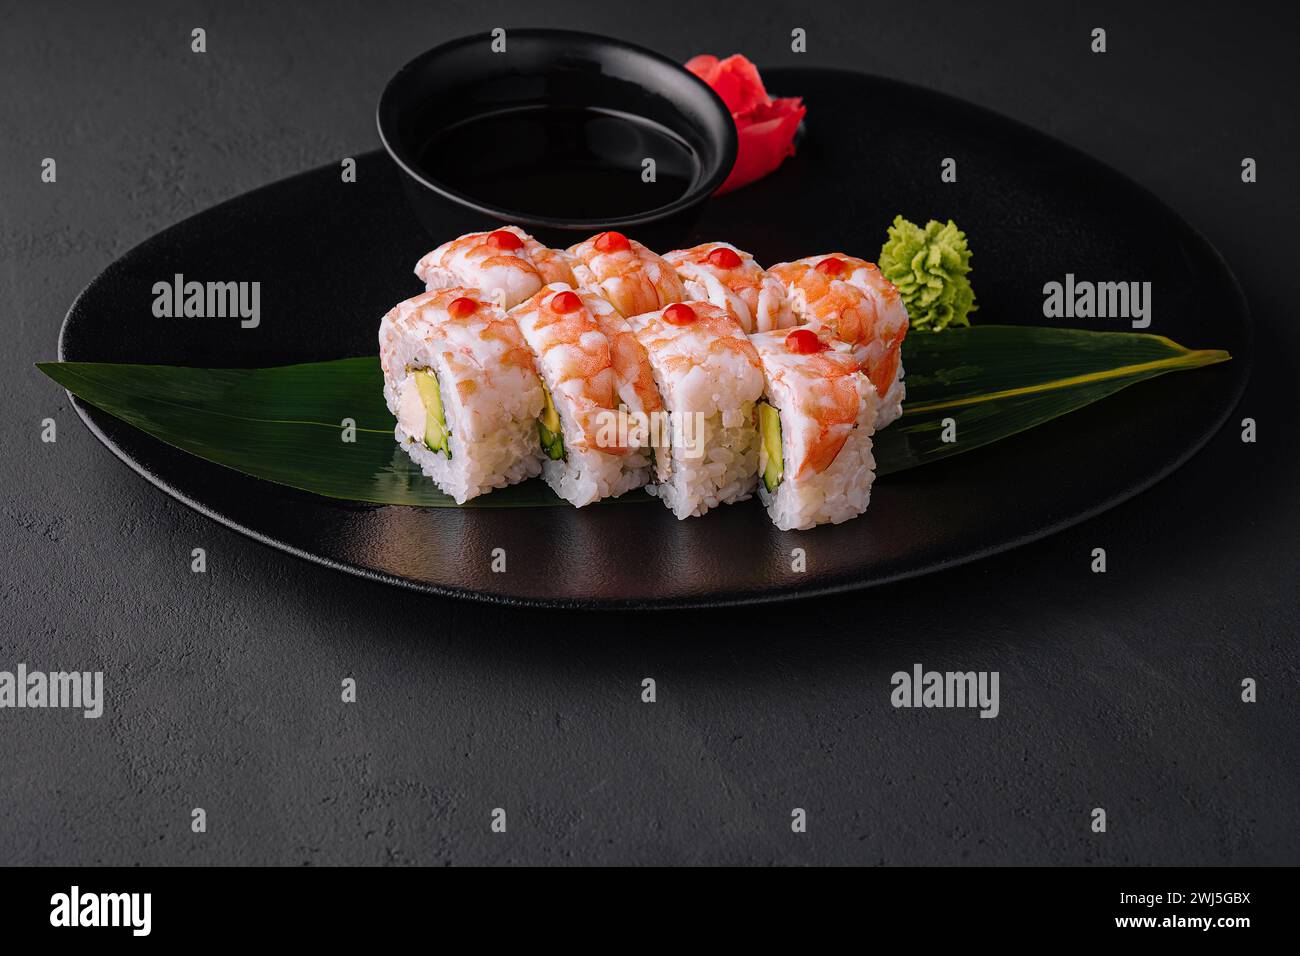 Rouleau de sushi recouvert de viande de crevettes sur une assiette en céramique noire Banque D'Images